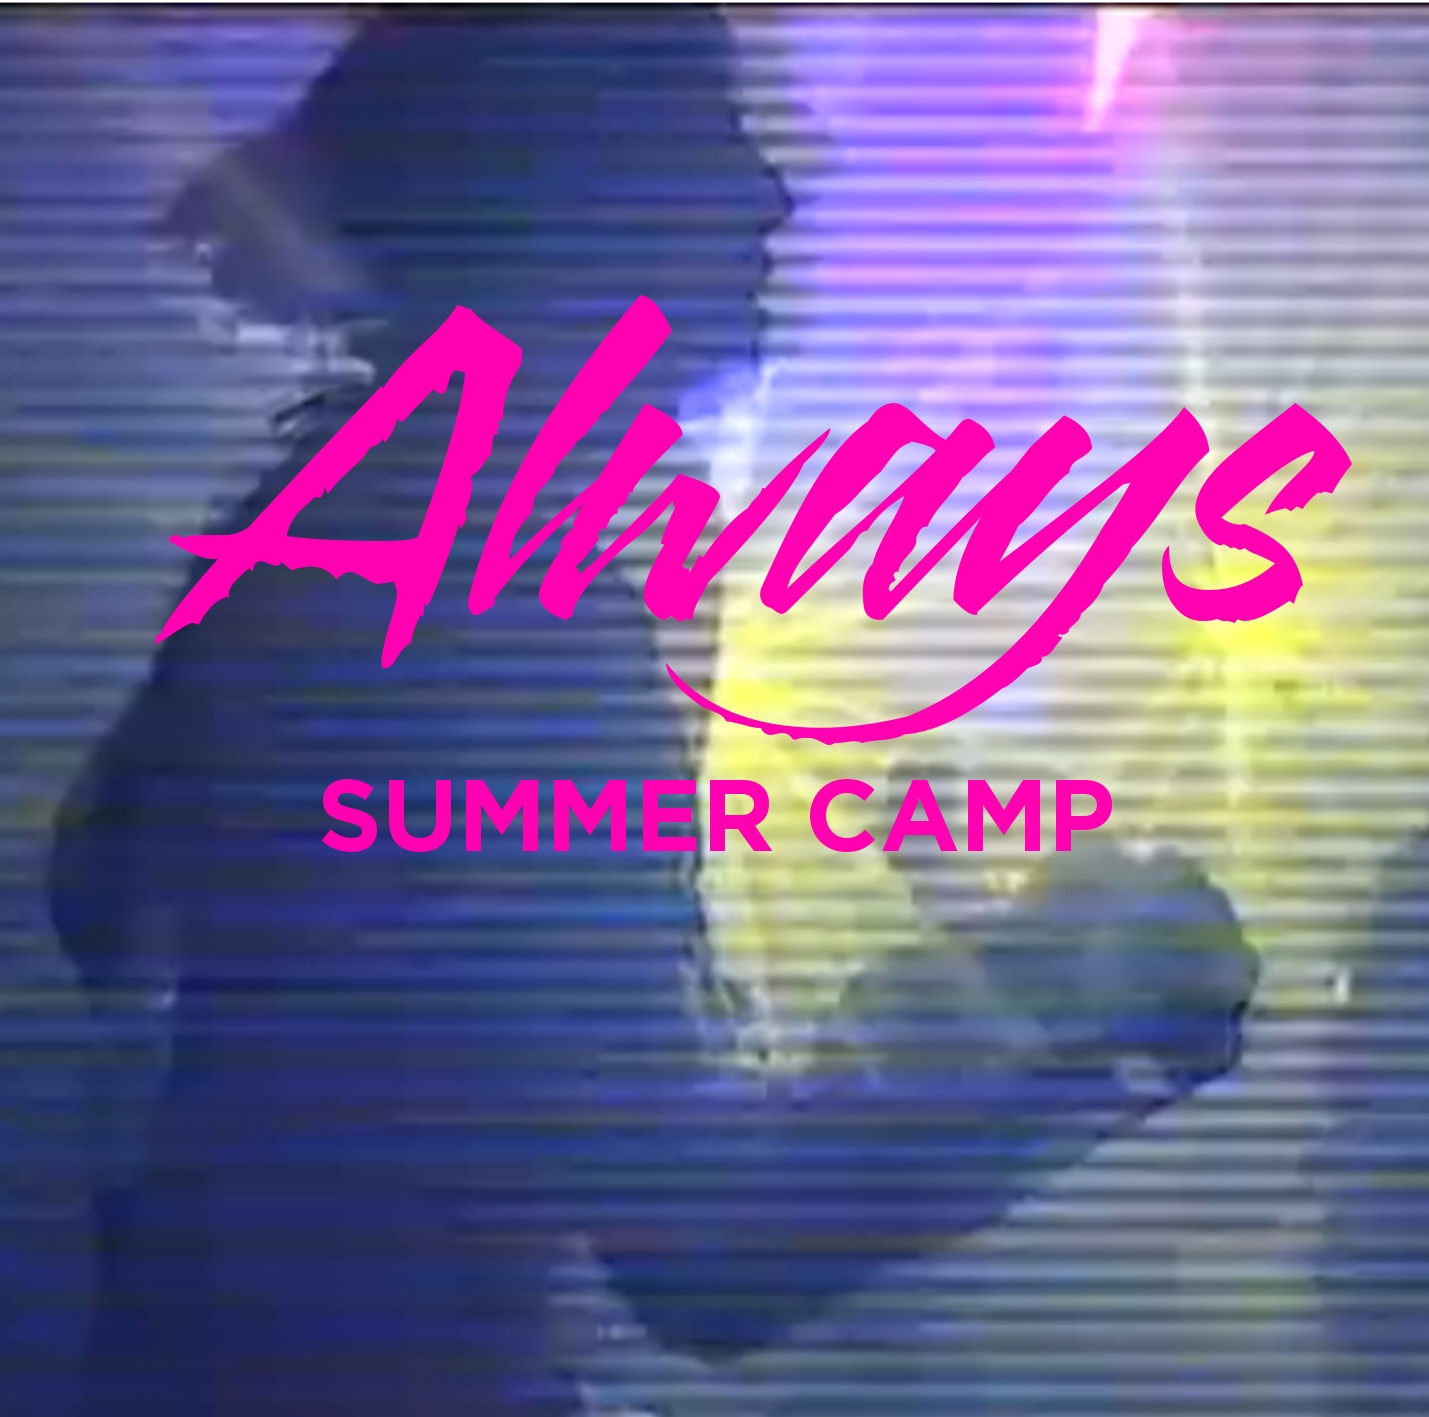 SUMMER CAMP – Always